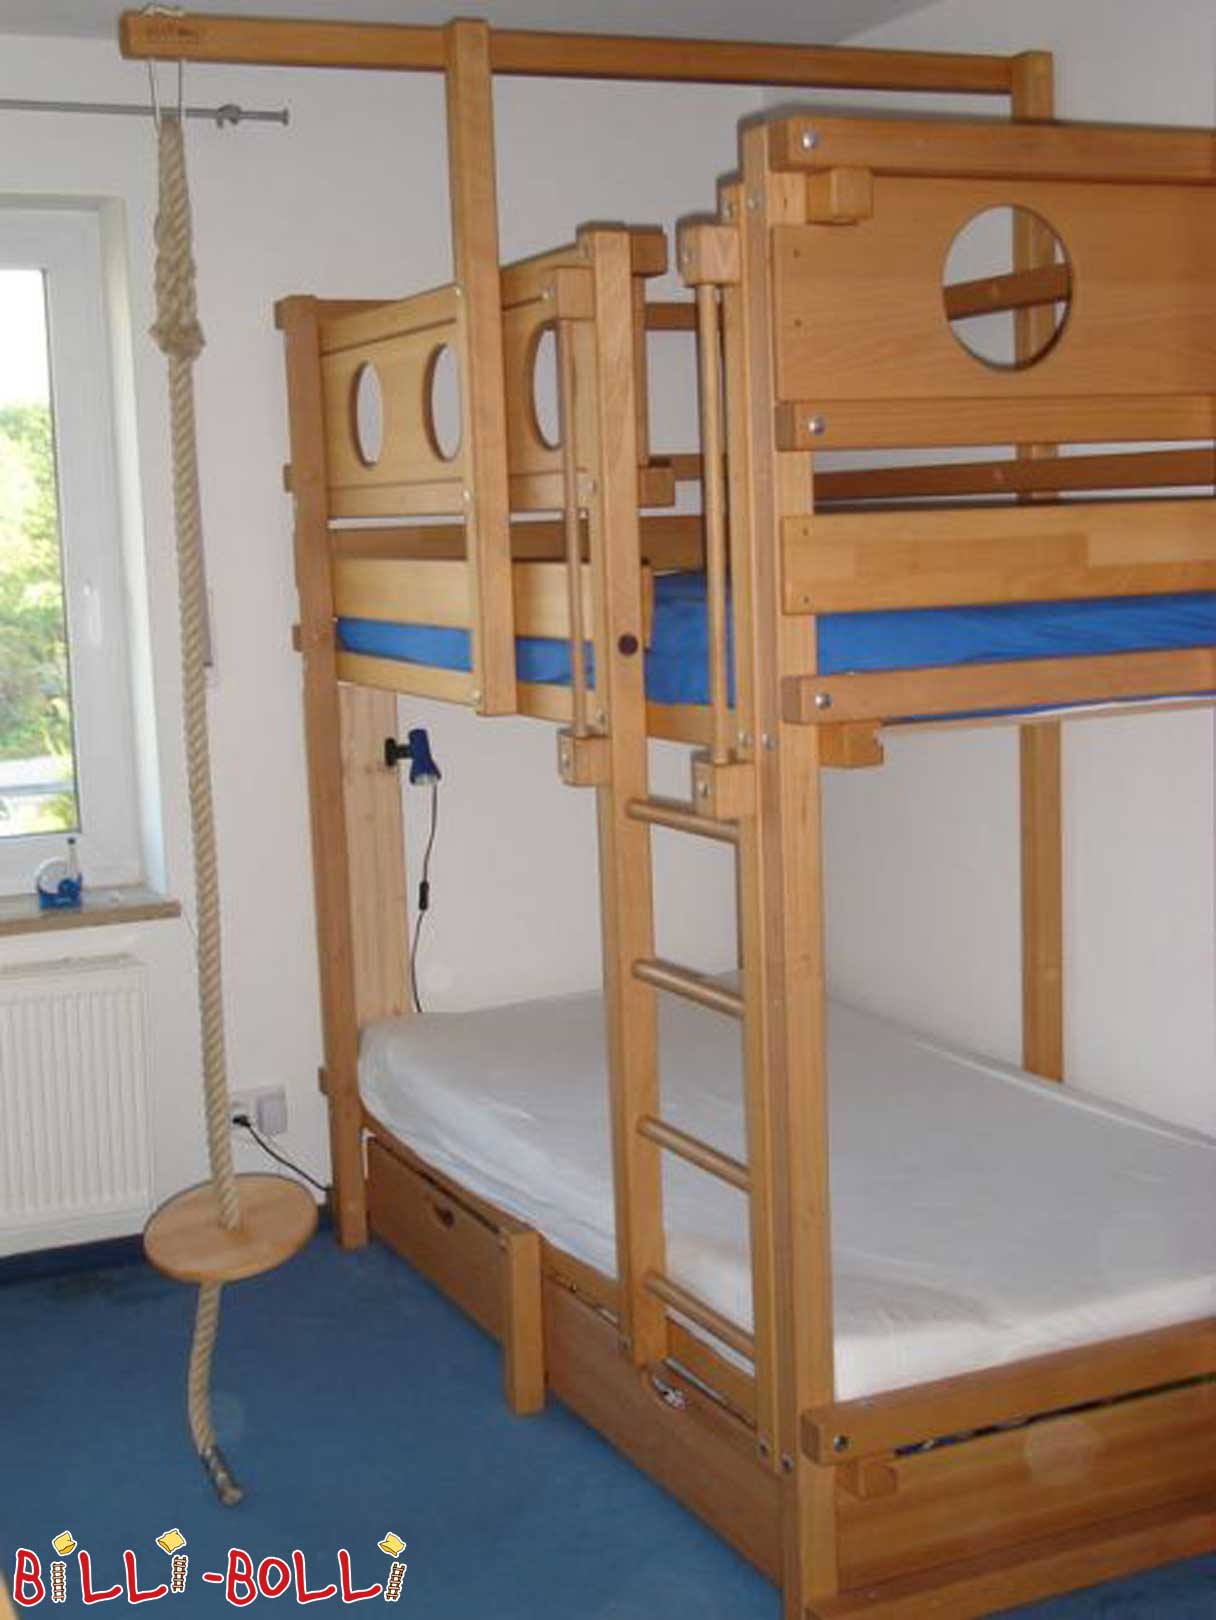 سرير بطابقين Billi-Bolli في خشب الزان (باب: سرير بطابقين مستعمل)